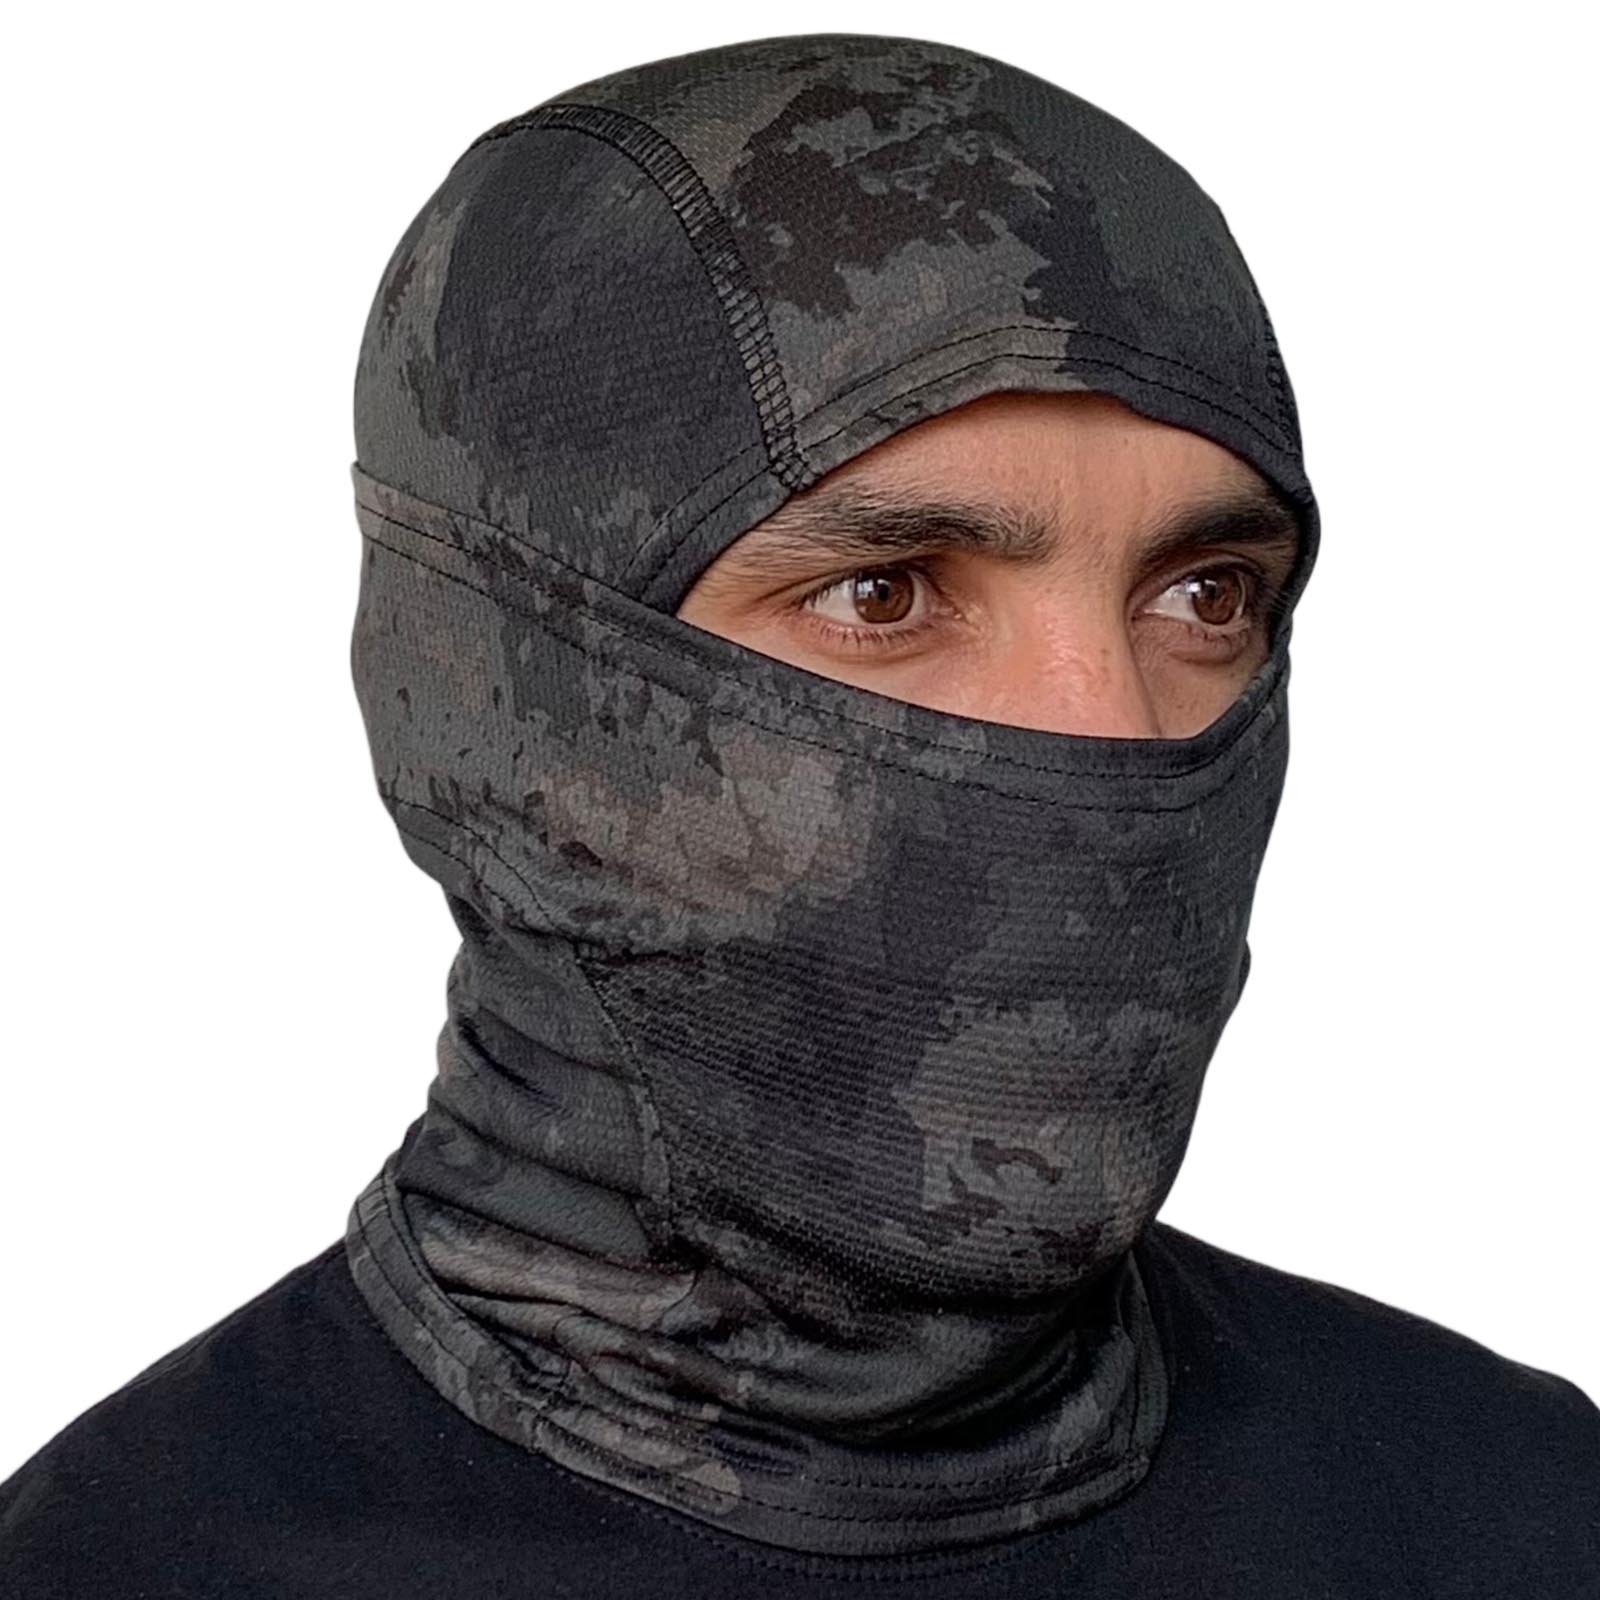 Купить в военторге камуфляжную маску балаклаву для лица